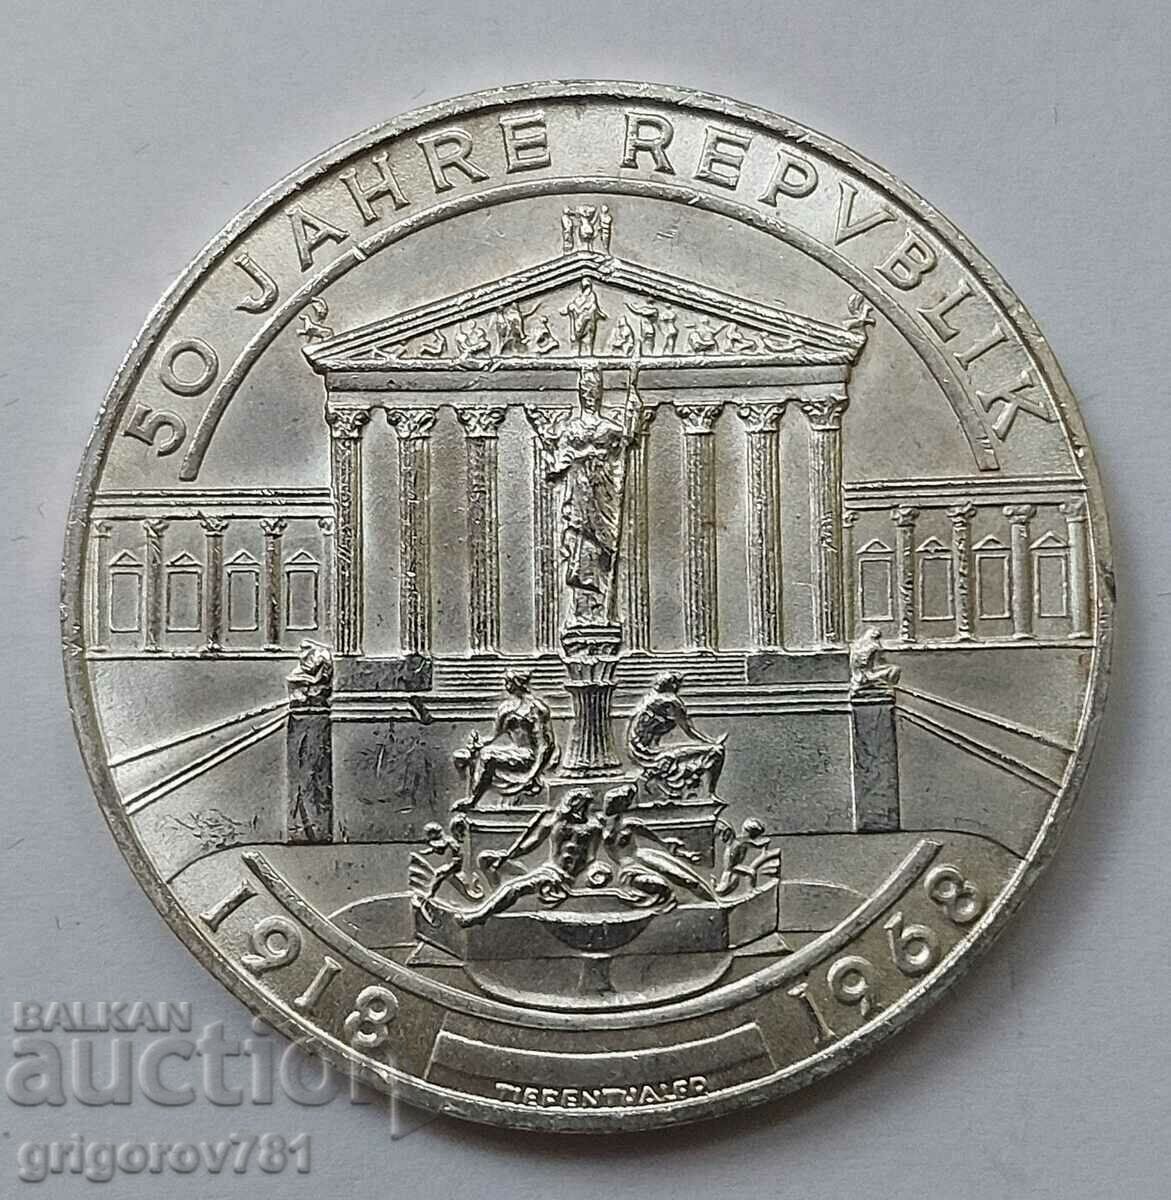 50 Shilling Silver Αυστρία 1968 - Ασημένιο νόμισμα #14